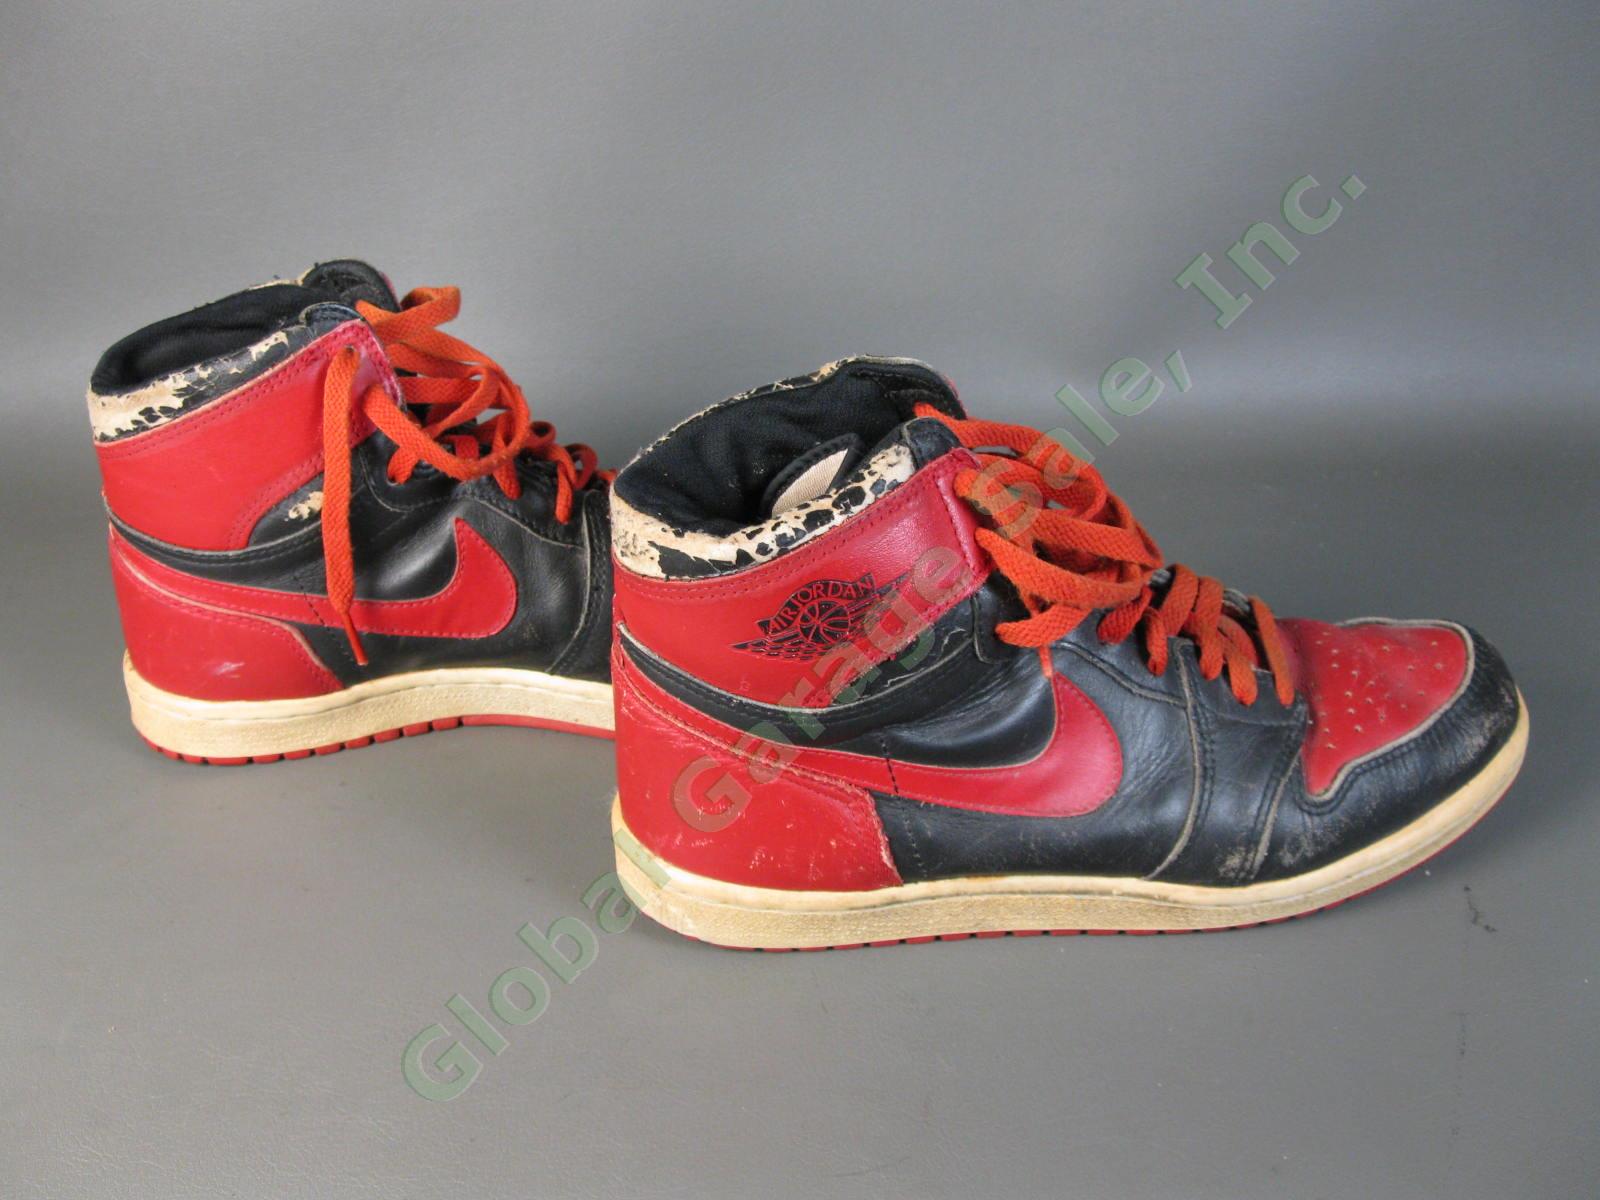 ORIGINAL 1985 Nike Air Jordan 1 Bred Black Red Chicago Bulls BANNED OG MJ AJI NR 4